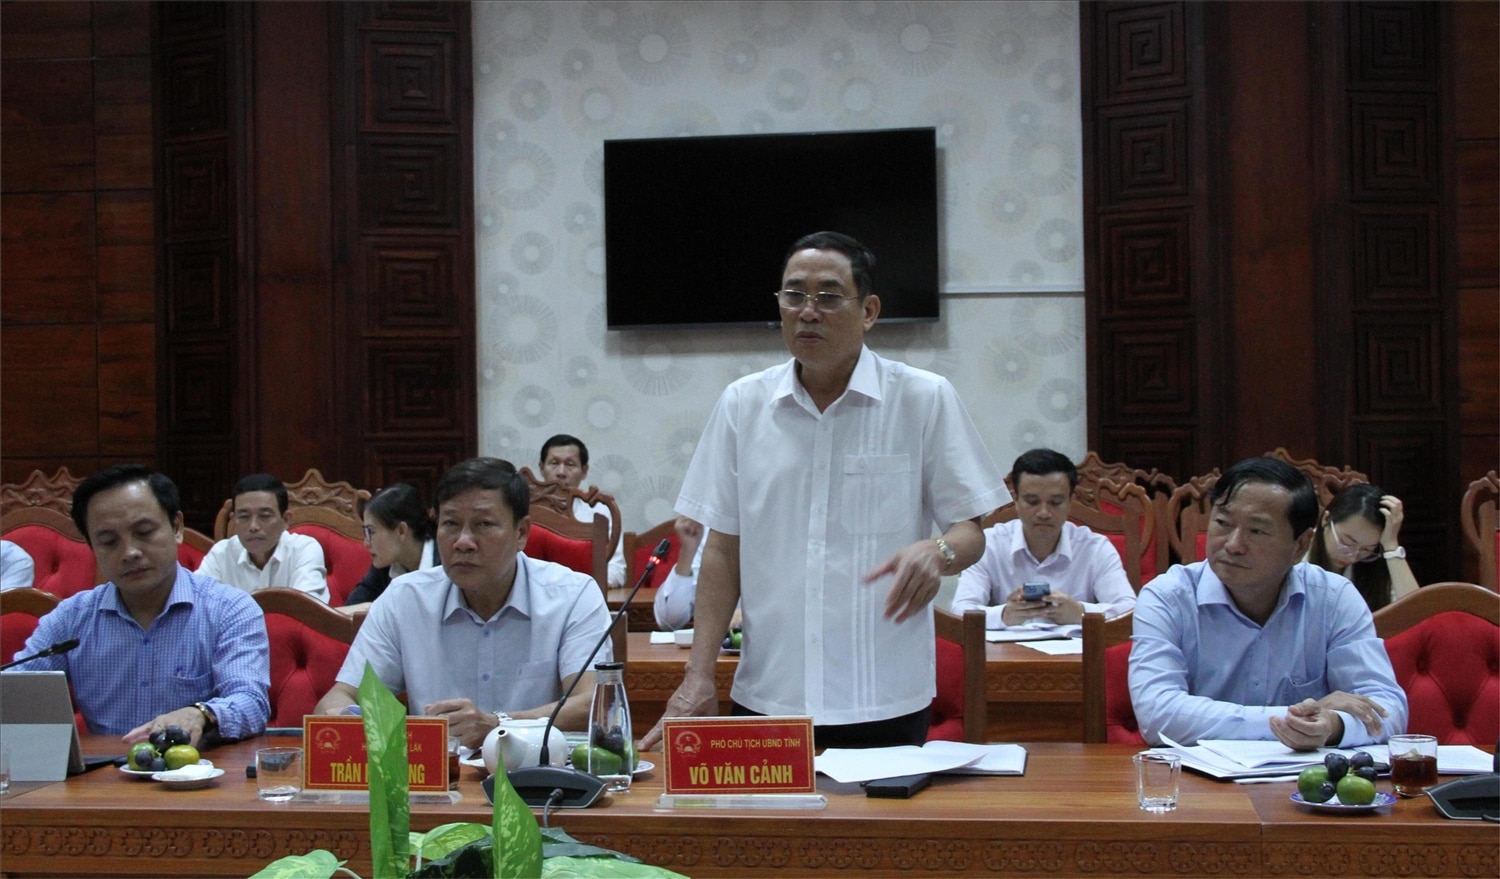 Phó Chủ tịch UBND tỉnh Đắk Lắk Võ Văn Cảnh phát biểu ý kiến tại buổi làm việc